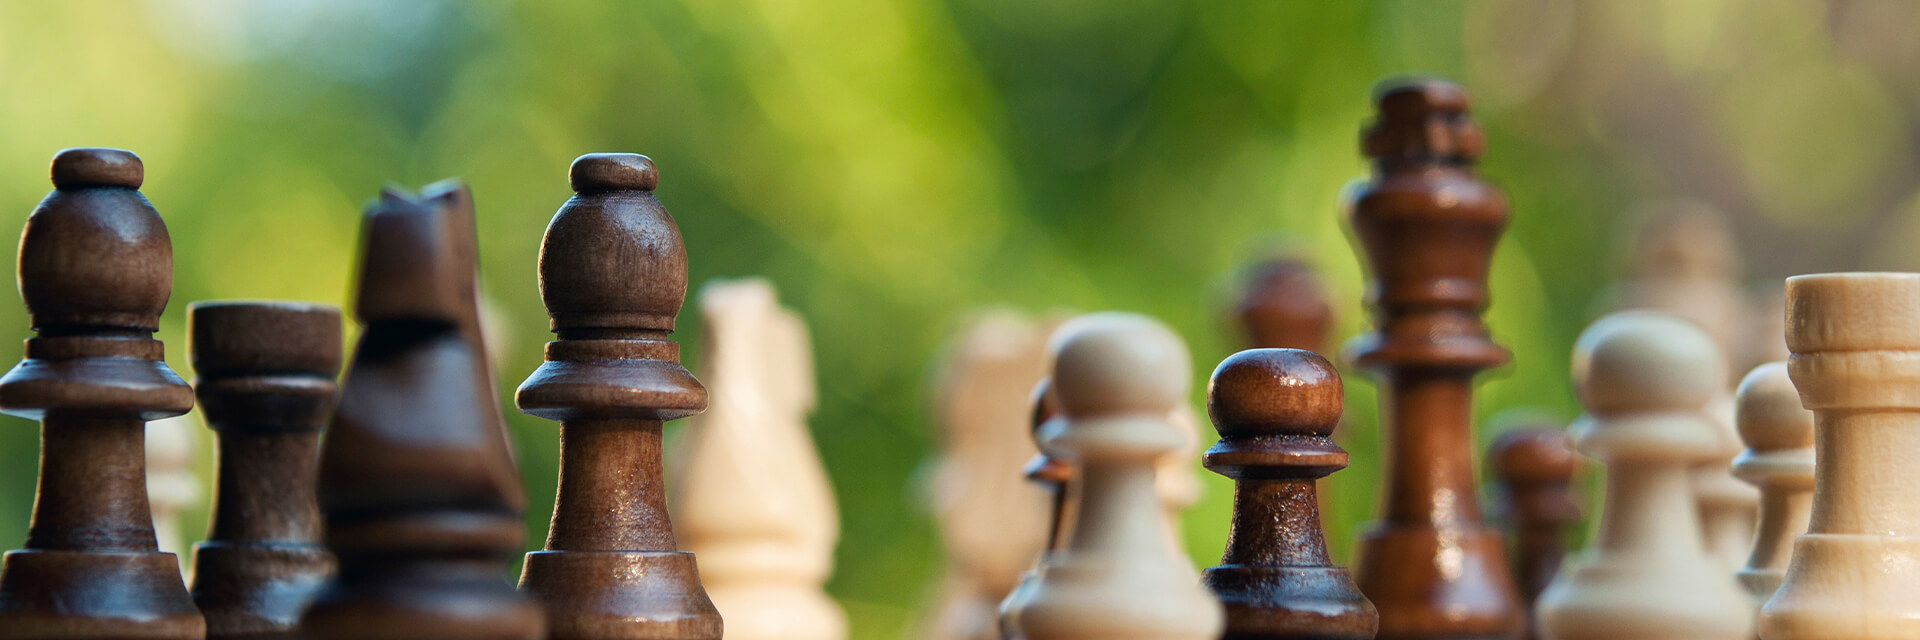 The chess games of Scott Thomson